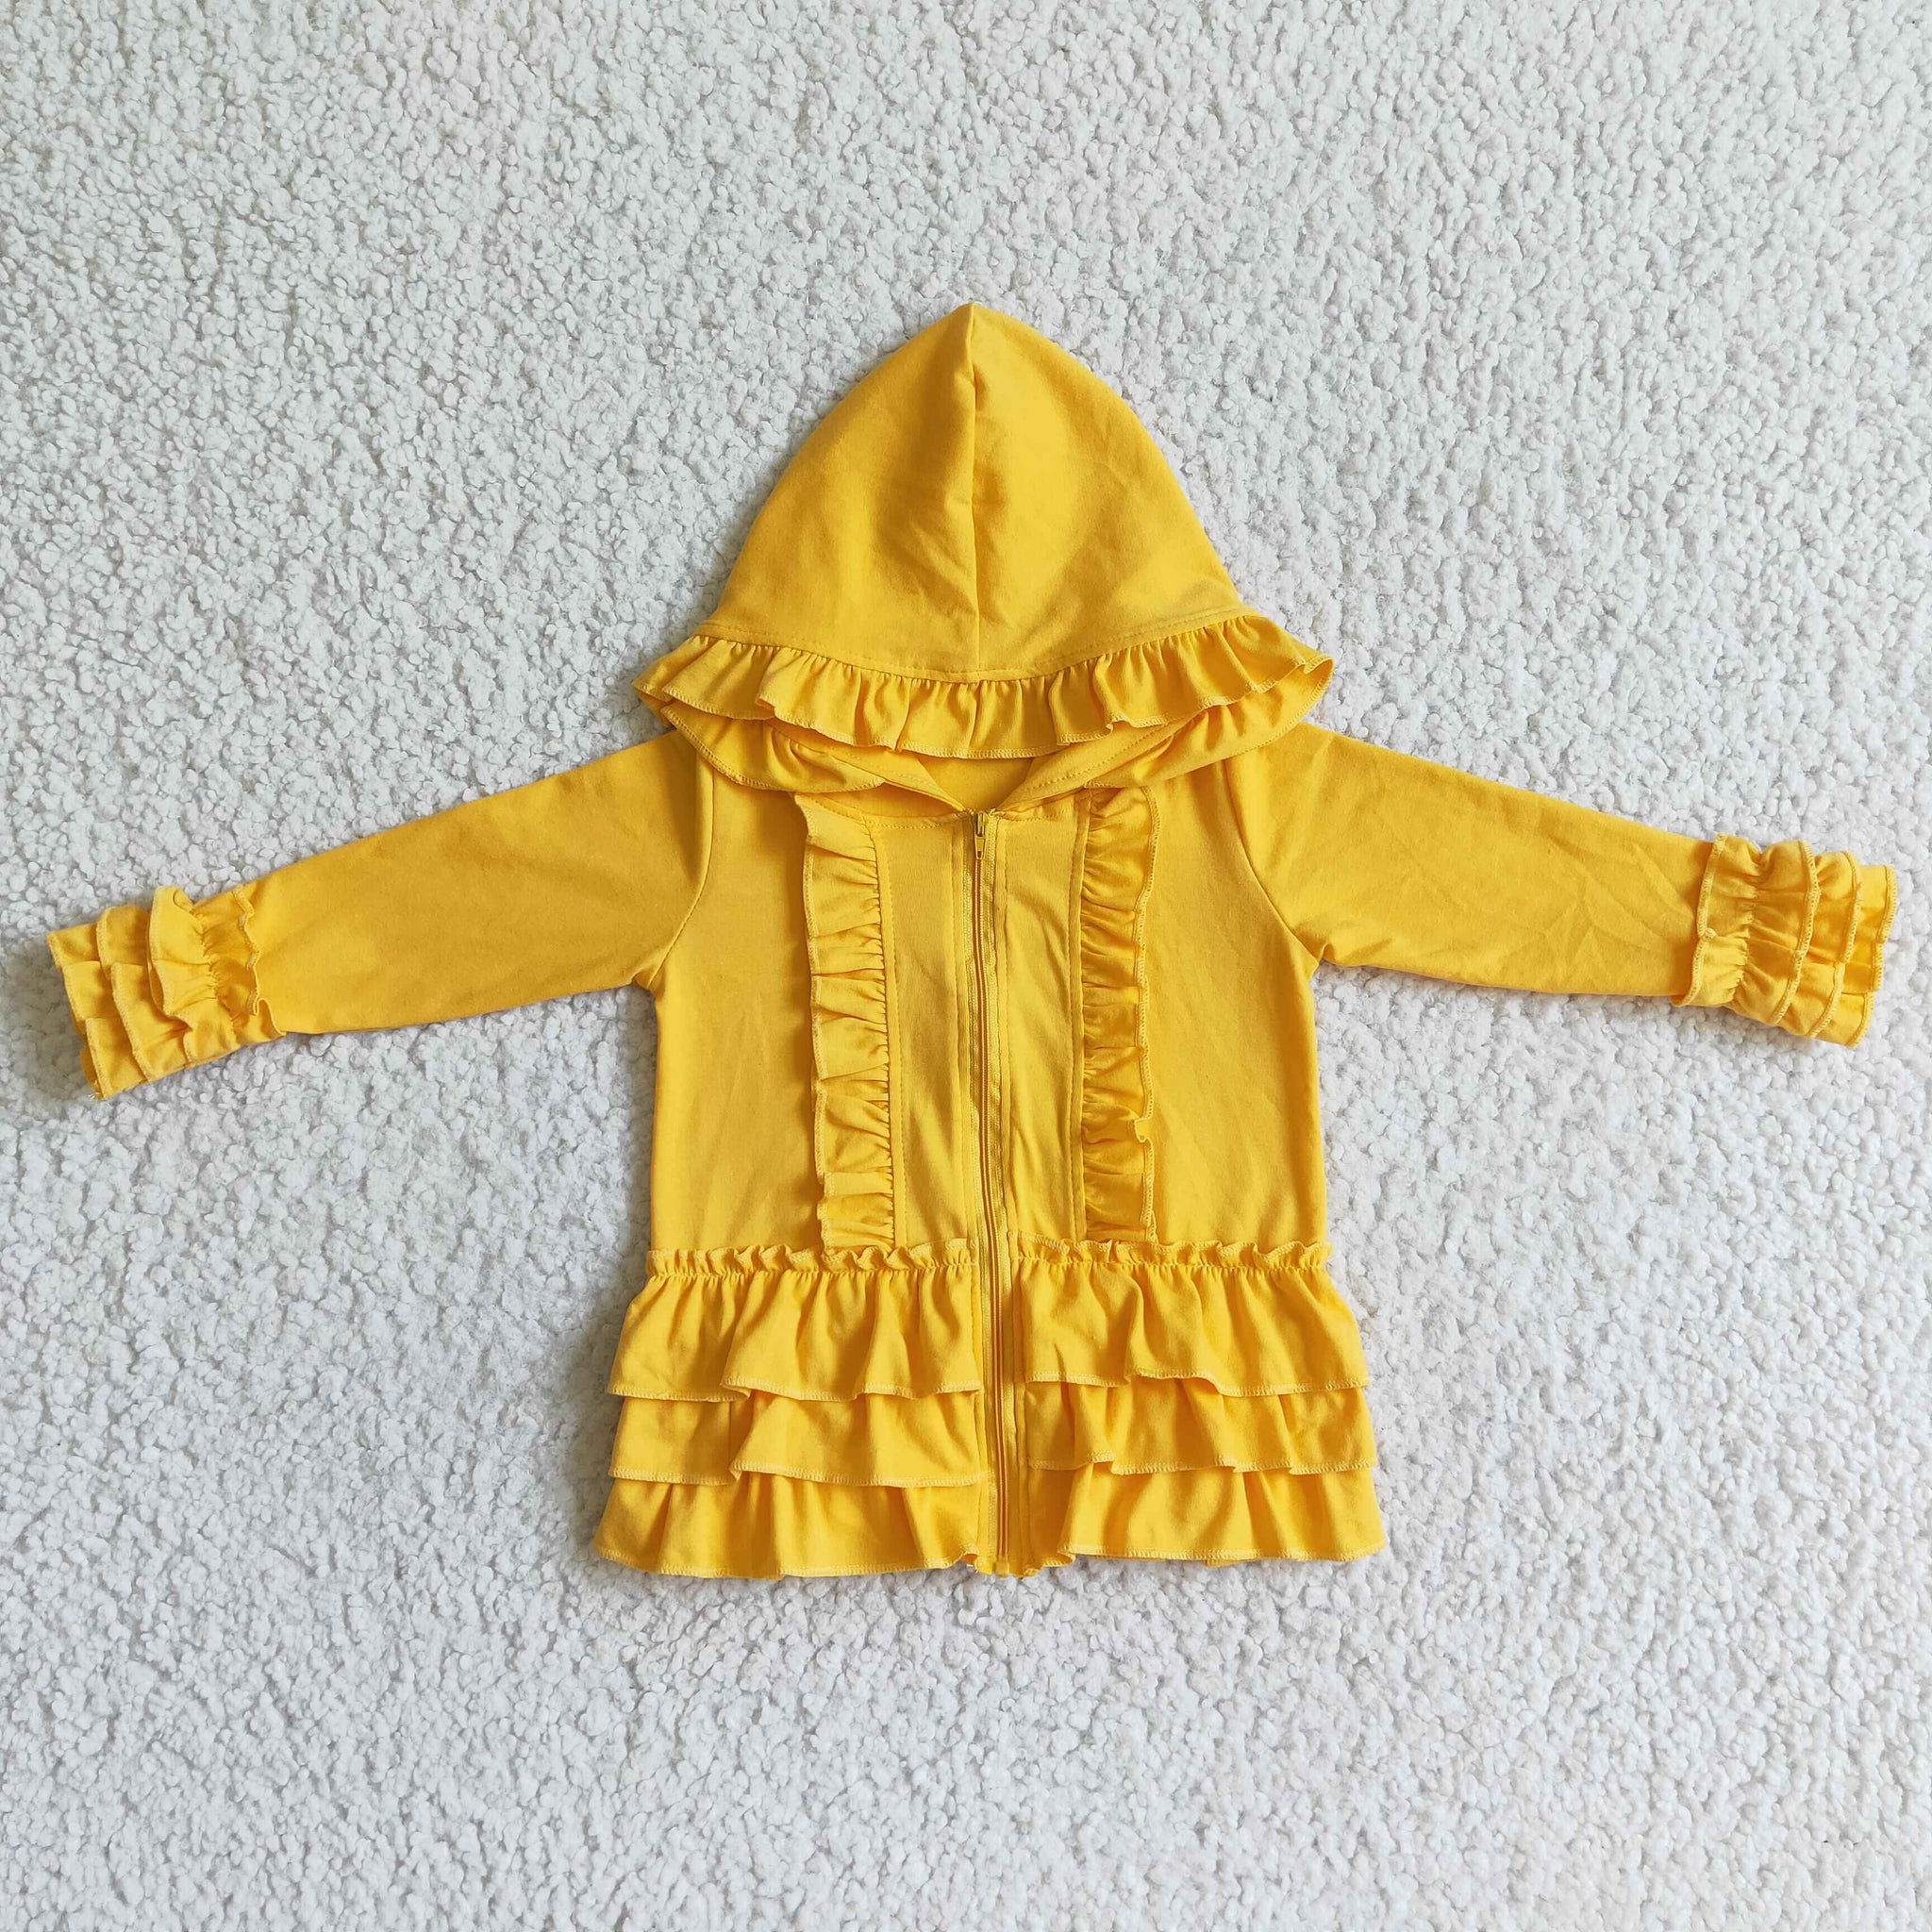 GT0018 girls winter clothes  yellow cotton zipper coat